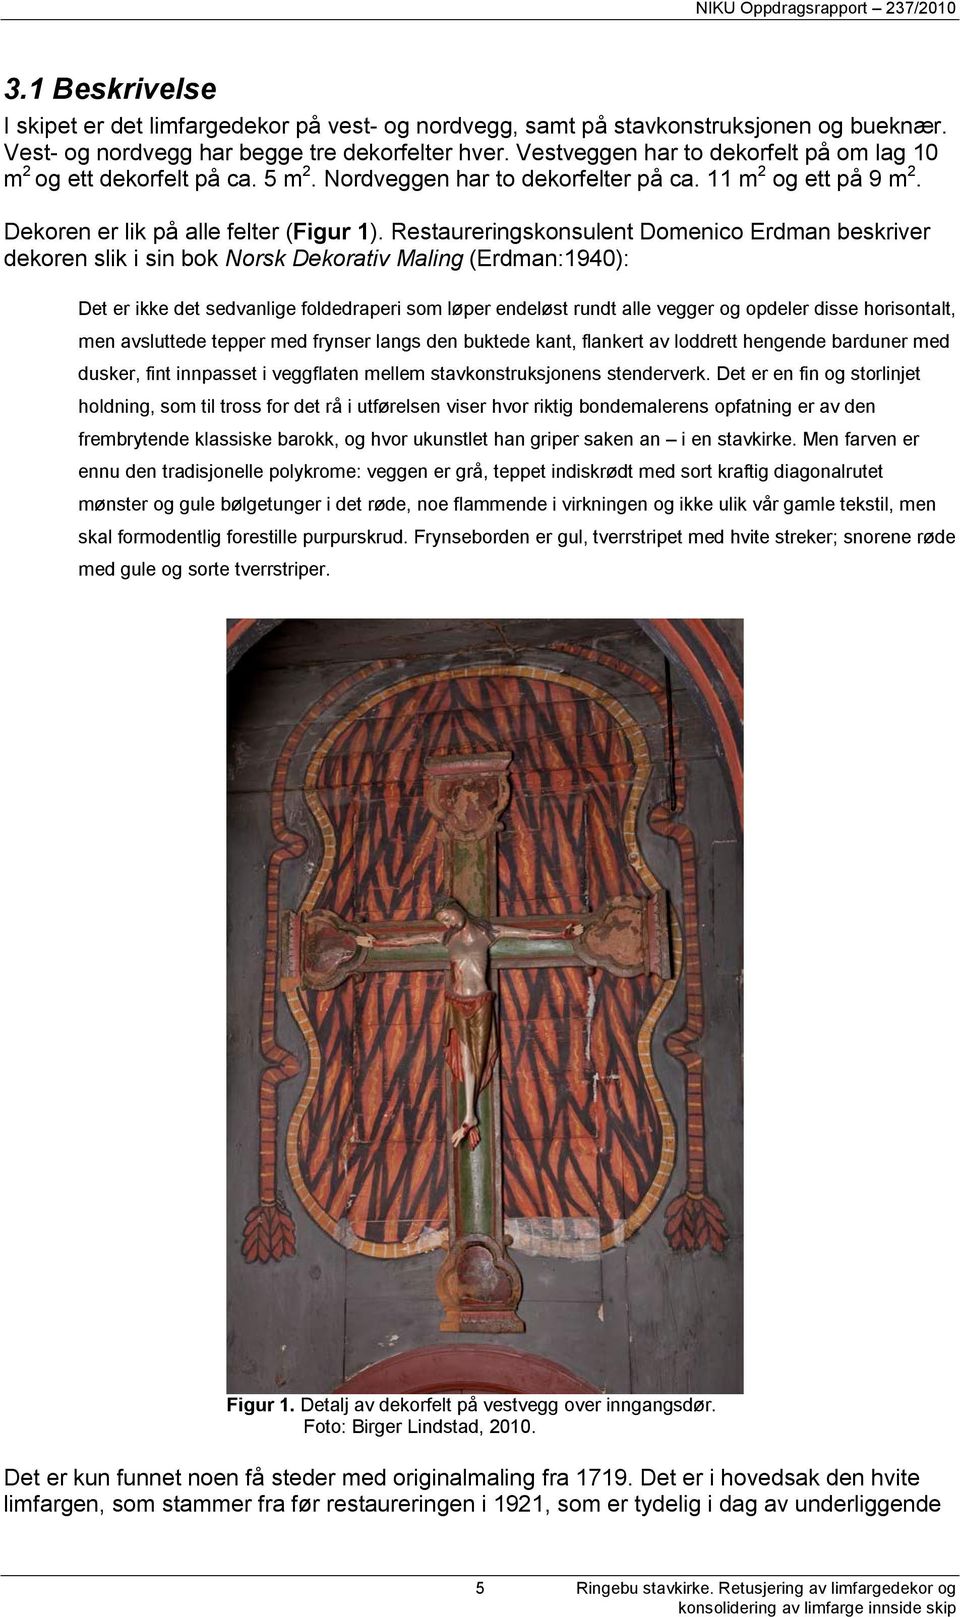 Restaureringskonsulent Domenico Erdman beskriver dekoren slik i sin bok Norsk Dekorativ Maling (Erdman:1940): Det er ikke det sedvanlige foldedraperi som løper endeløst rundt alle vegger og opdeler